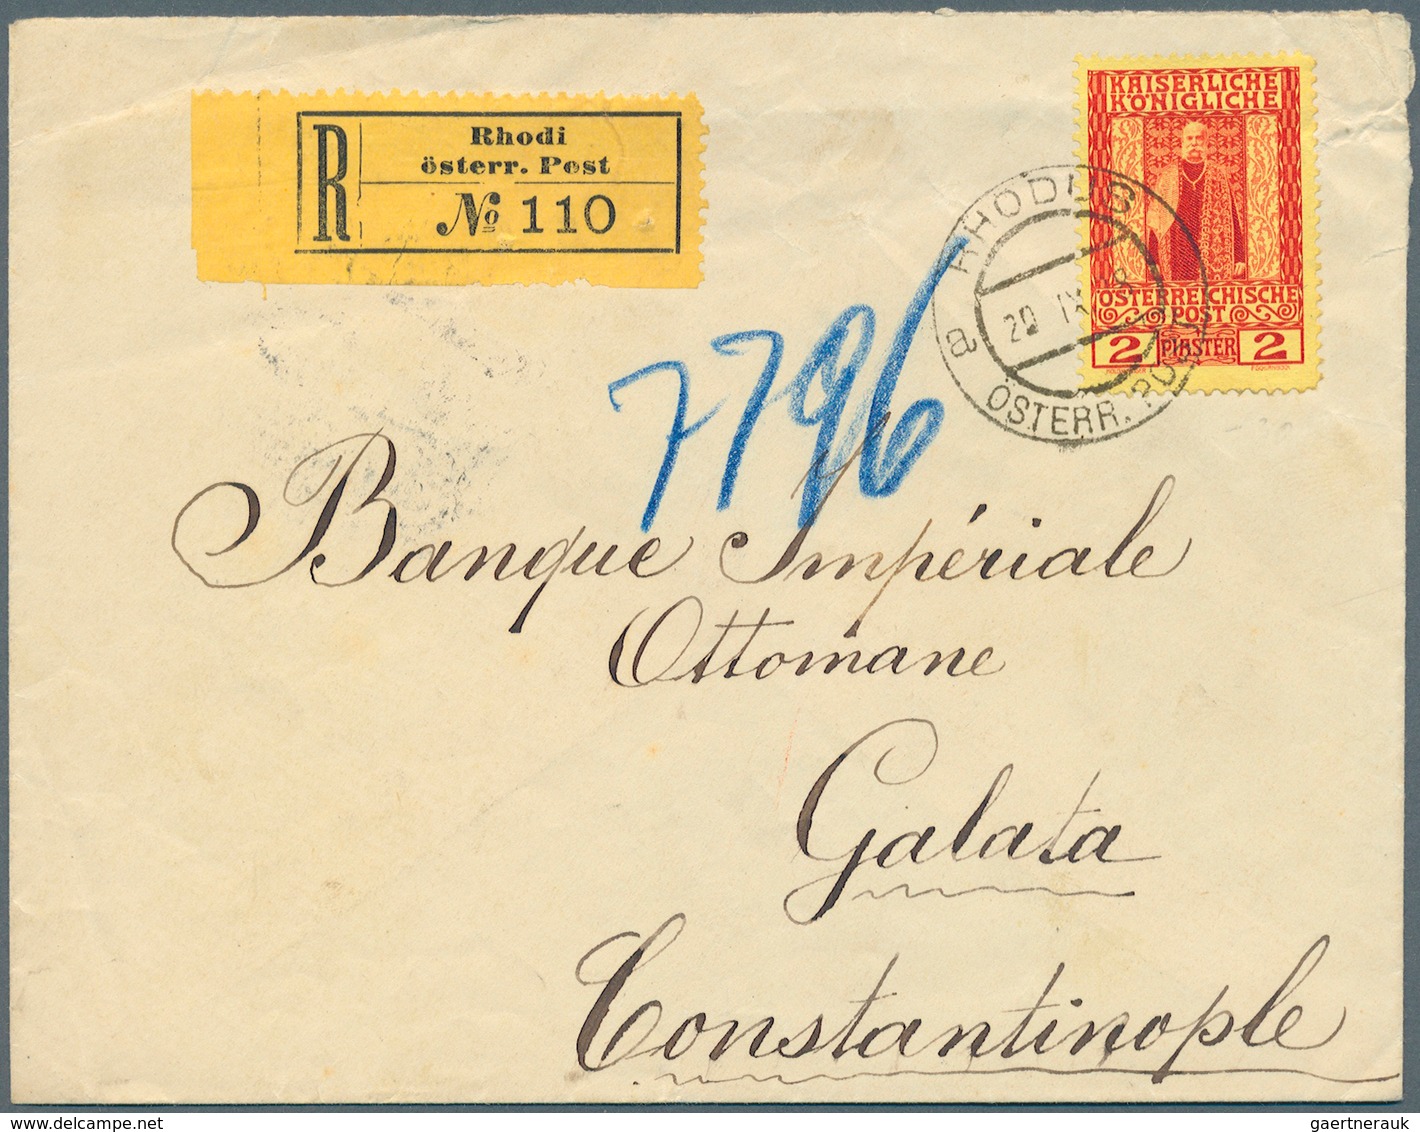 Österreichische Post in der Levante: 1866/1918, 22 Belege ohne Constantinpel und Smyrna, dabei u. a.